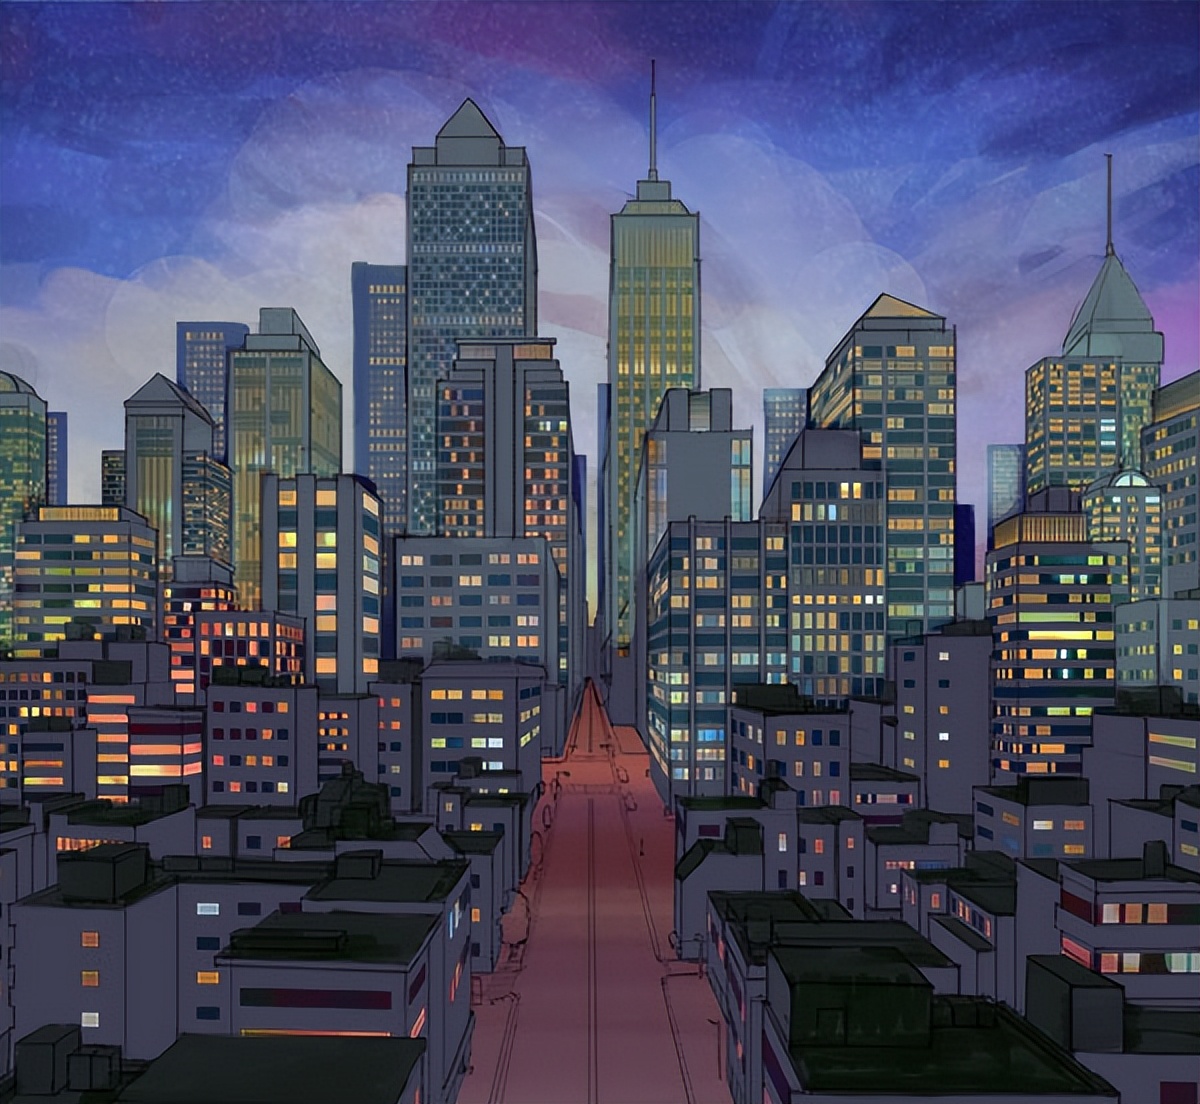 城市夜景怎么画?教你画简单的城市夜景!